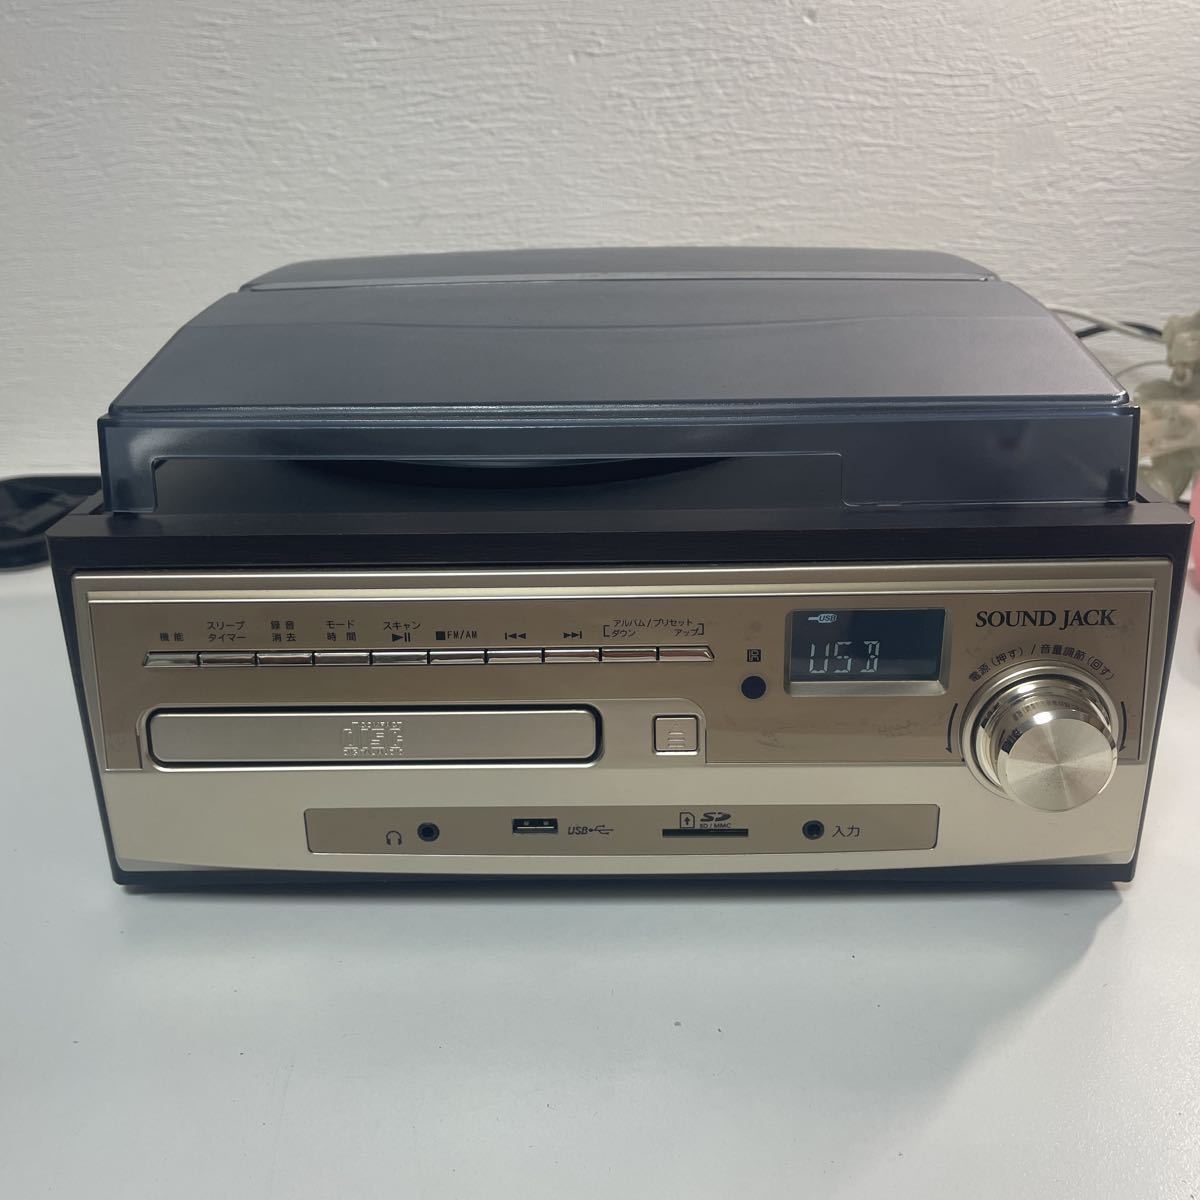 SOUND JACK VS-M007 マルチレコードプレーヤー スピーカー内蔵 VS-M007G 音源をデジタル録音 レコード 33/45/78rpm  カセットテープ